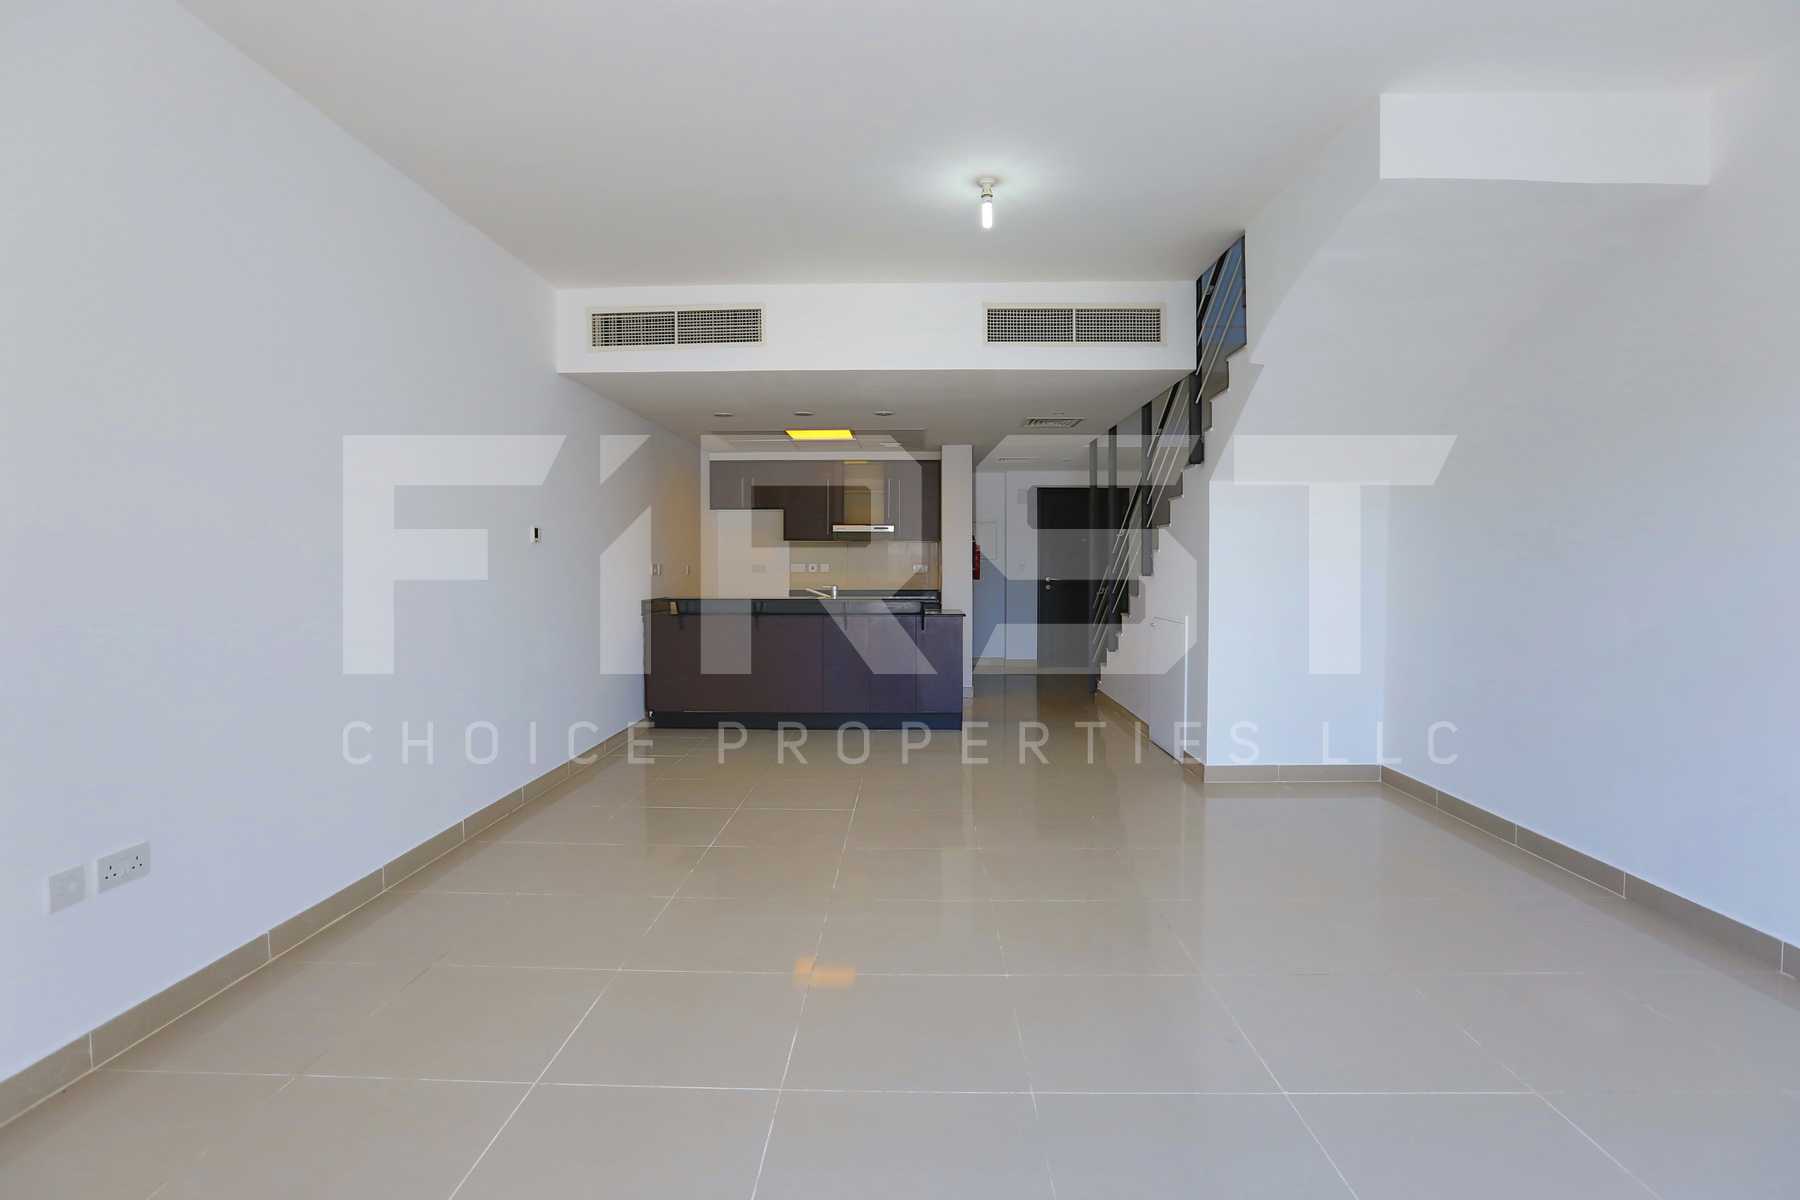 Internal Photo of 3 Bedroom Villa in Al Reef Villas Al Reef Abu Dhabi UAE 225.2 sq.m 2424 sq.ft (2).jpg